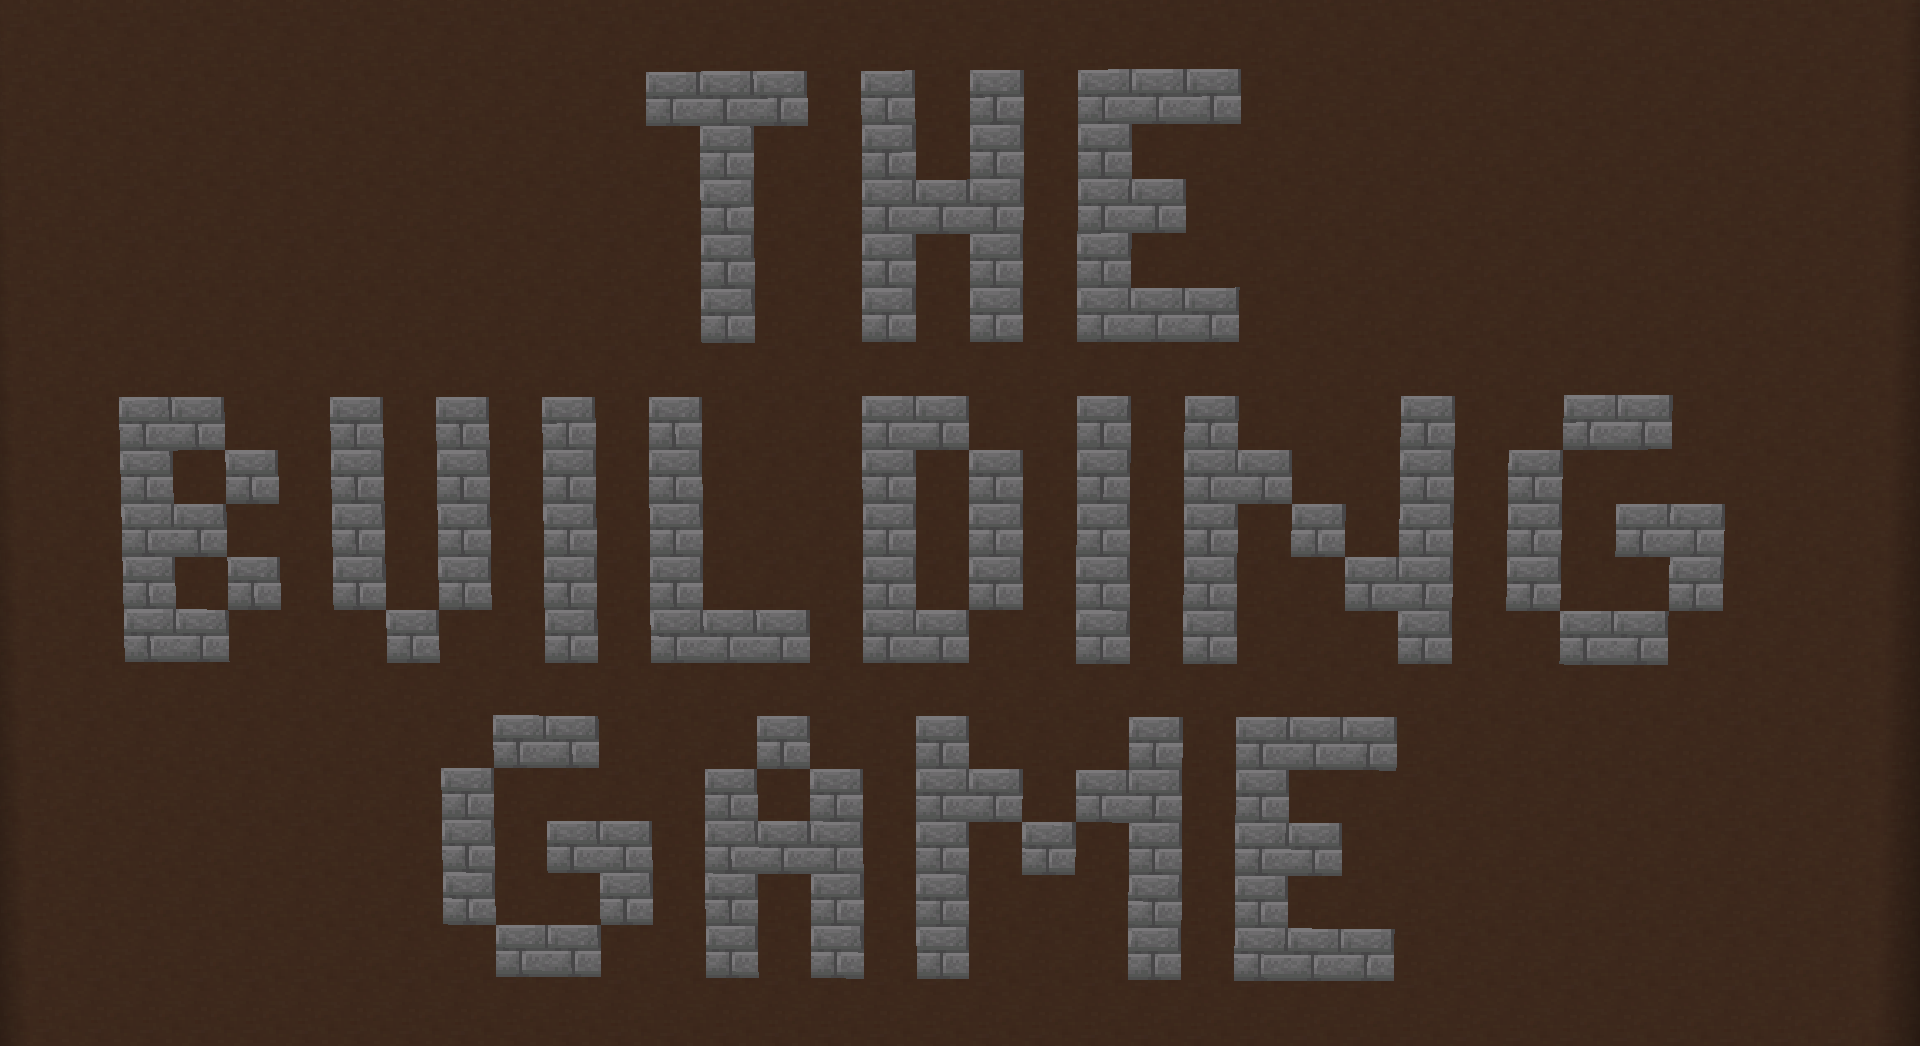 Herunterladen The Building Game for 1.16 zum Minecraft 1.16.4